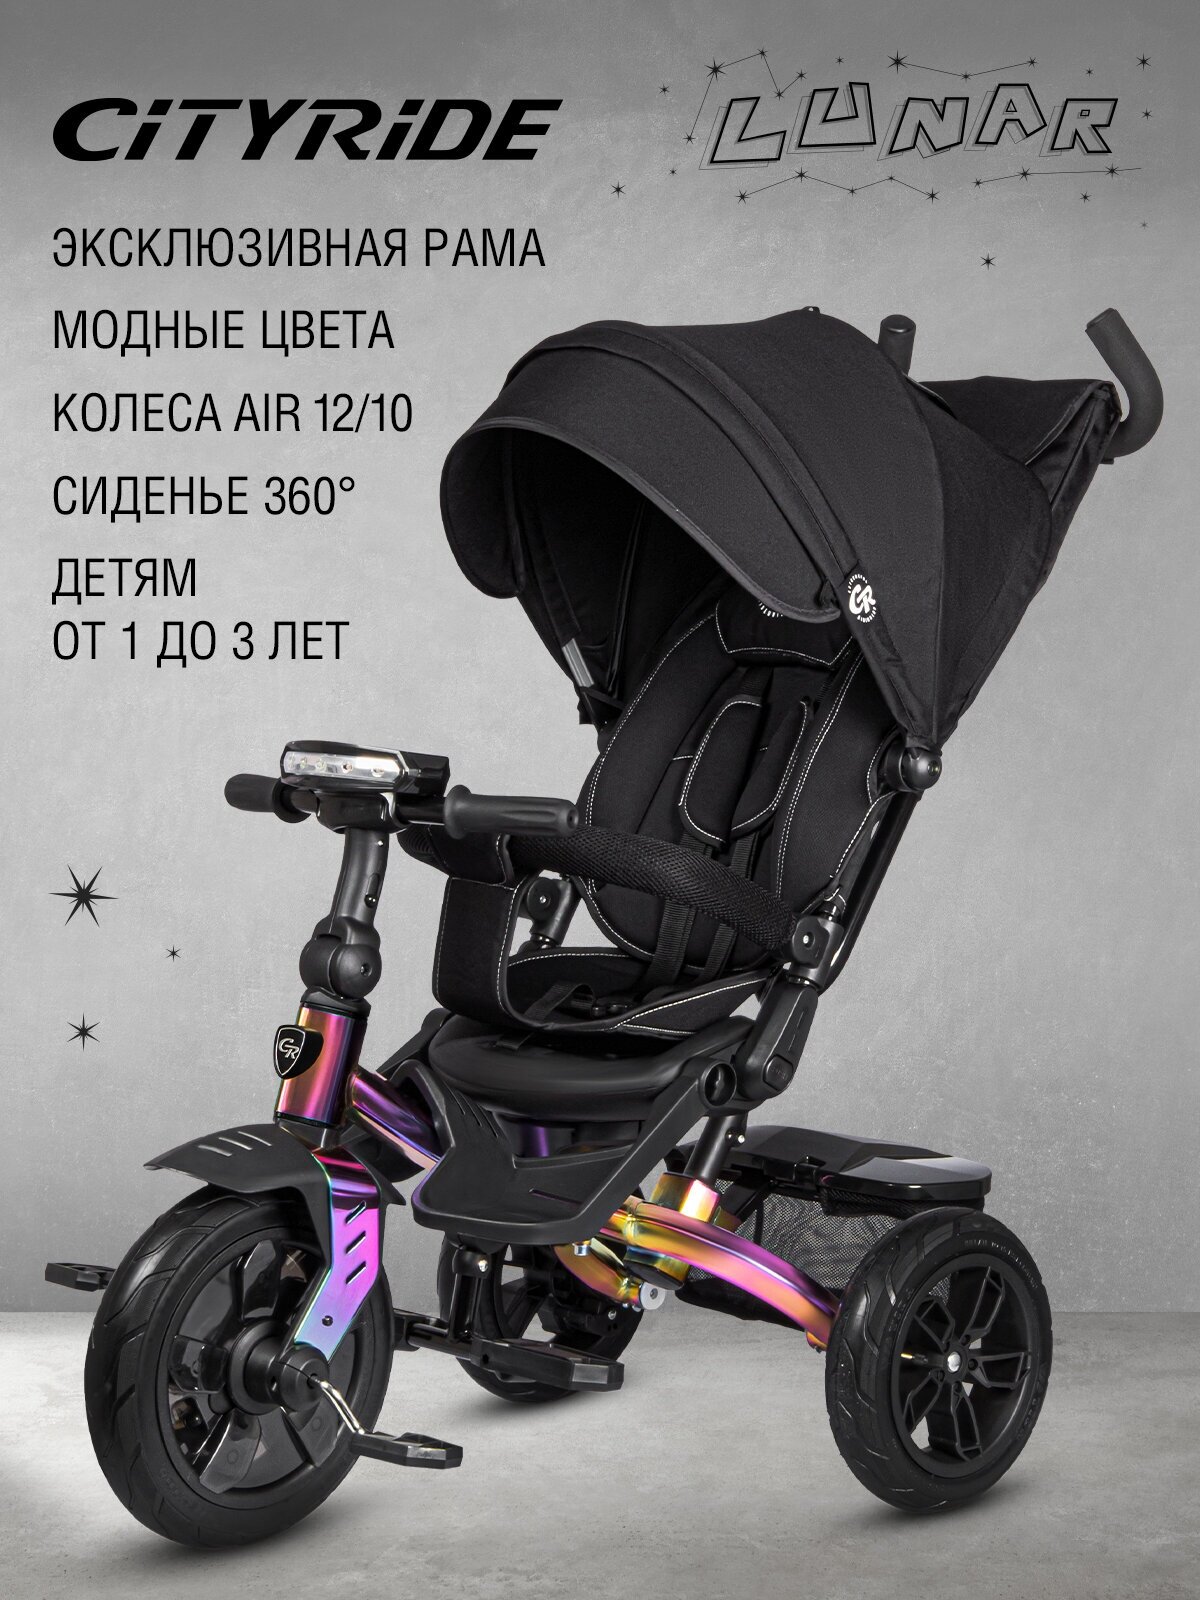 Велосипел детский трехколесный ТМ "CITY-RIDE LUNAR". Пятиугольная рама, складная крыша D600, фара свет/звук, подножки, надувные колеса 12"/10", ножной тормоз, поворот сиденья на 360гр. Цвет черный, хамелеон